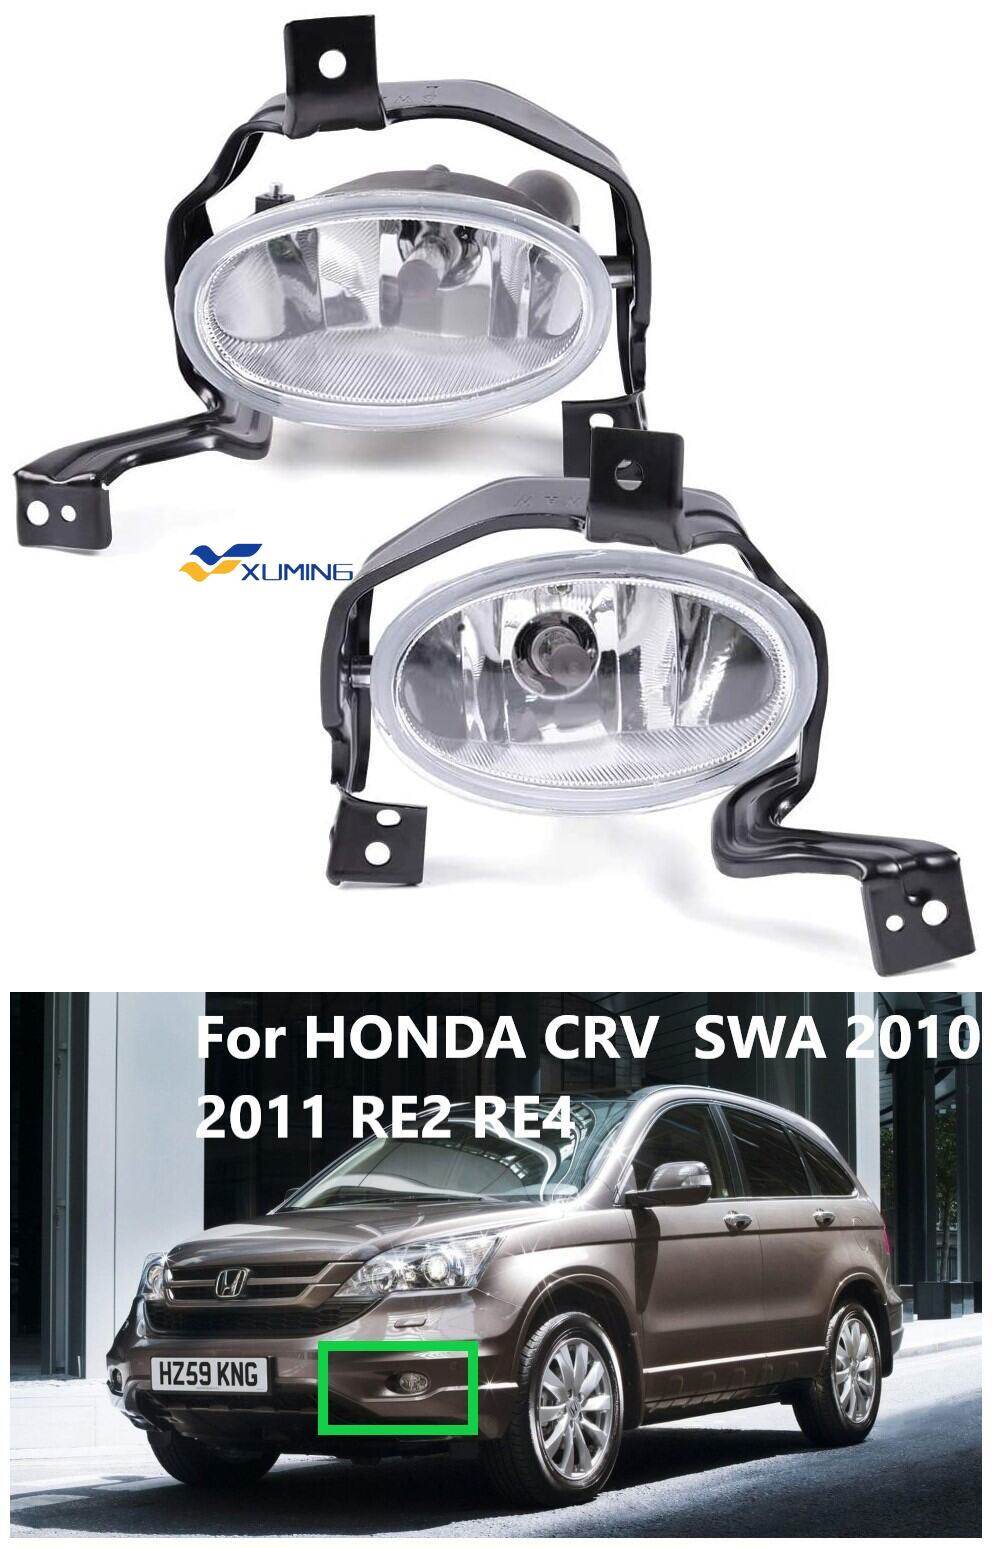 Honda giới thiệu CRV phiên bản 2010  Báo Dân trí